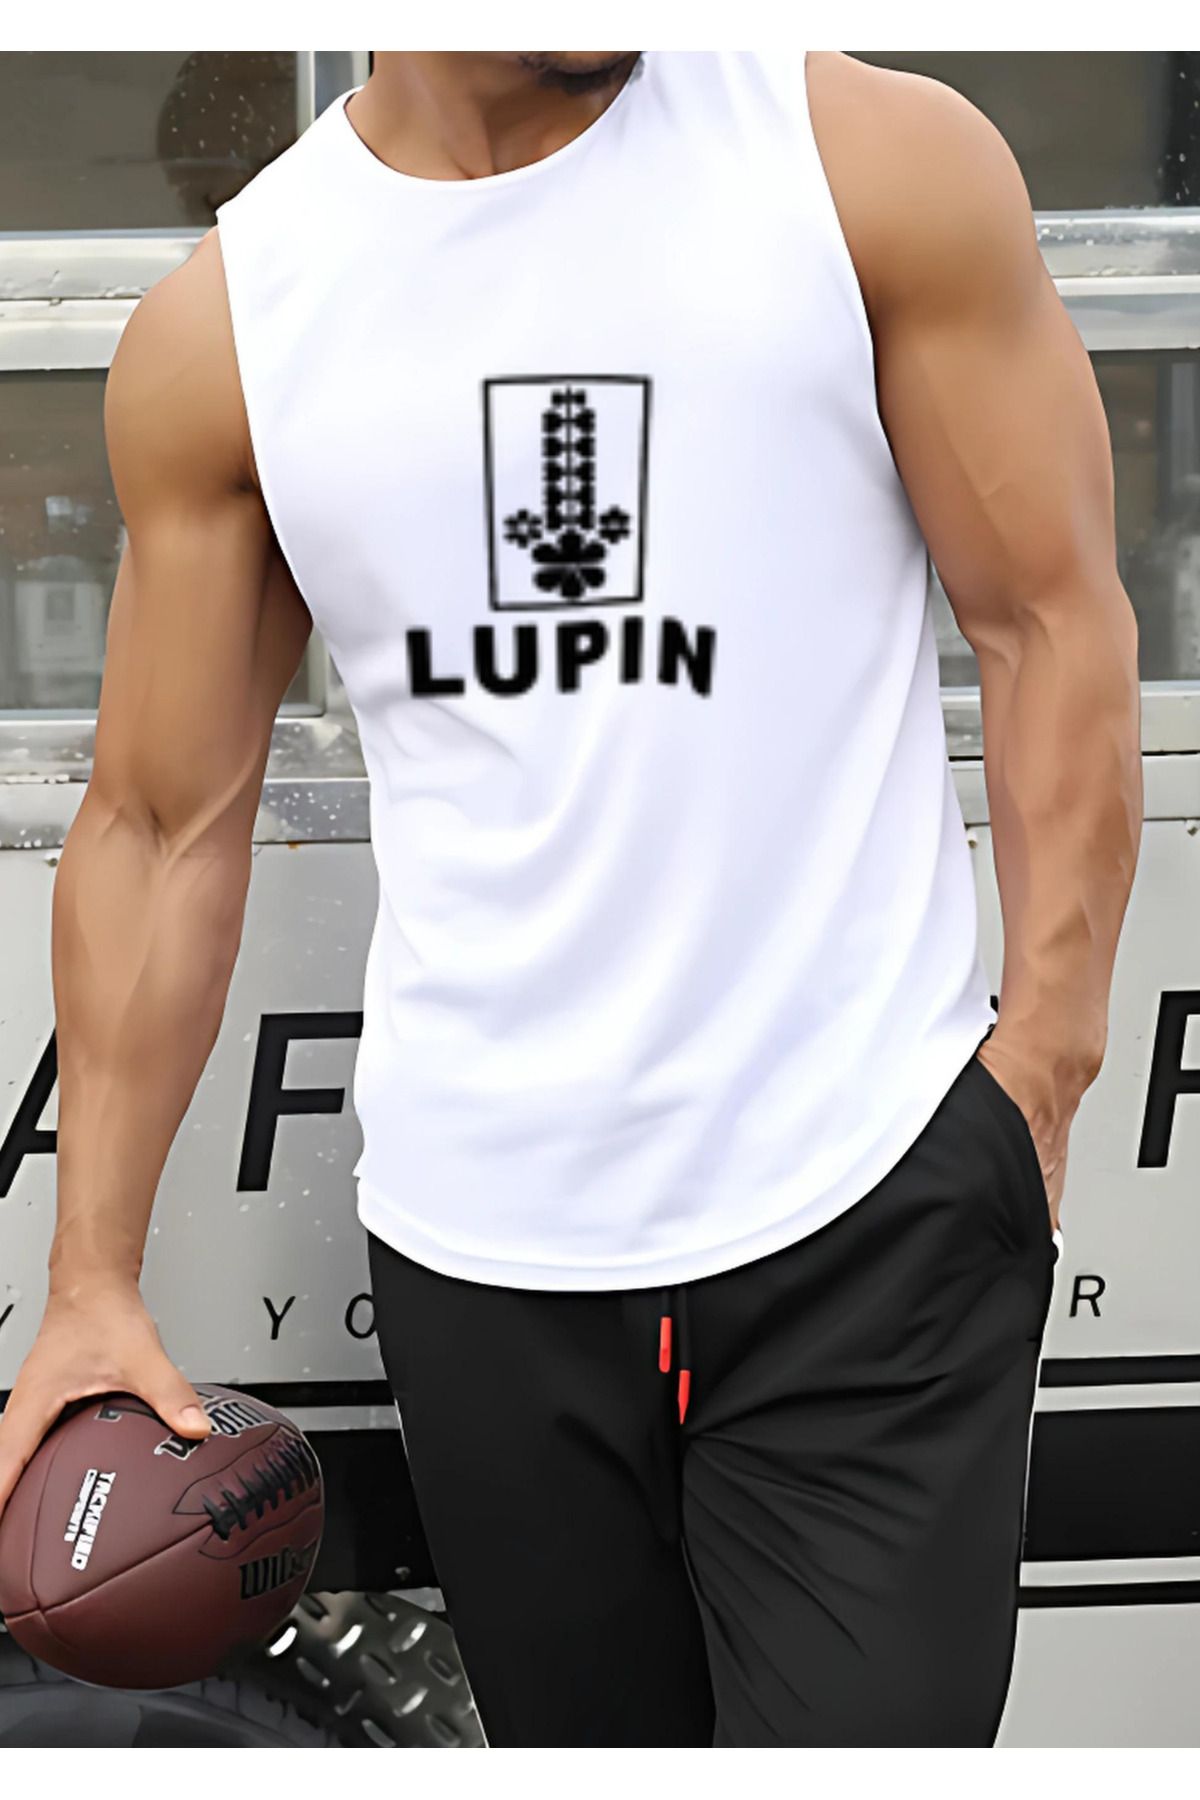 Capshon Erkek Spor Atlet - Sporcu Lupin Baskılı Fitness Gym Atleti